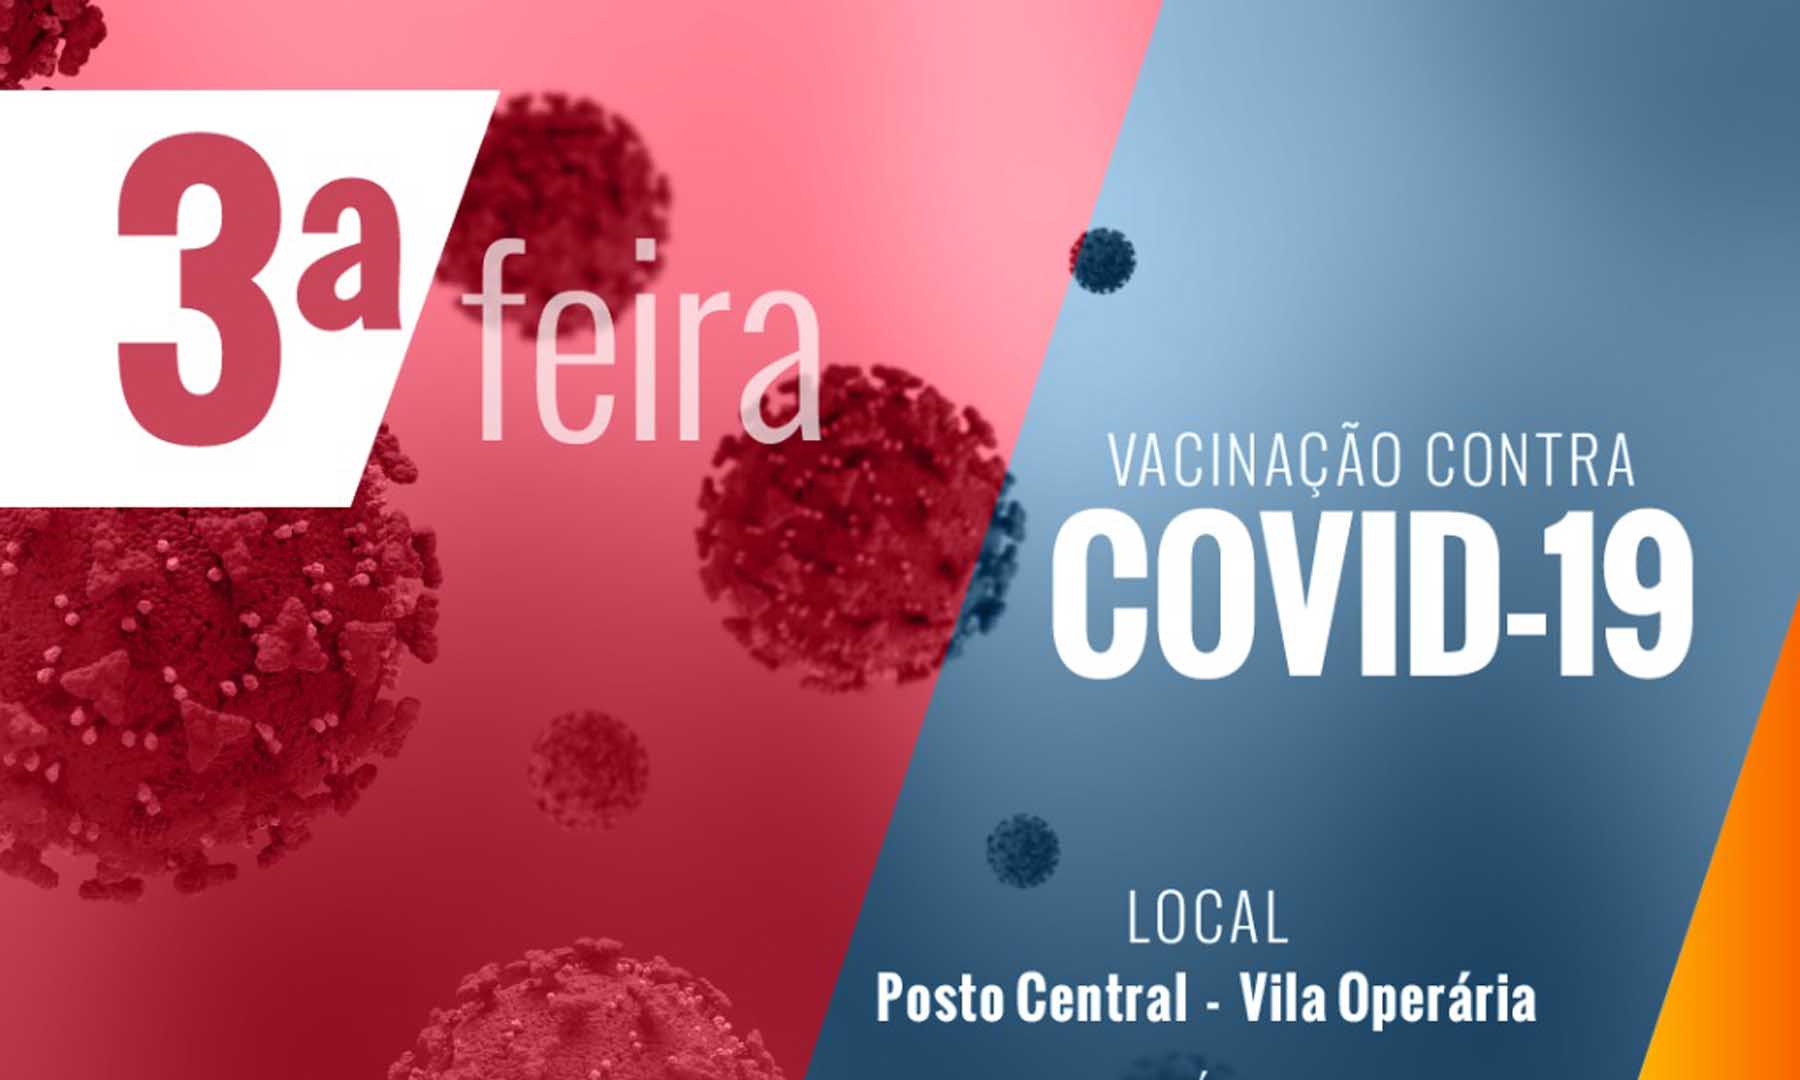 VACINAÇÃO COVID-19 - DIA 28 DE FEVEREIRO